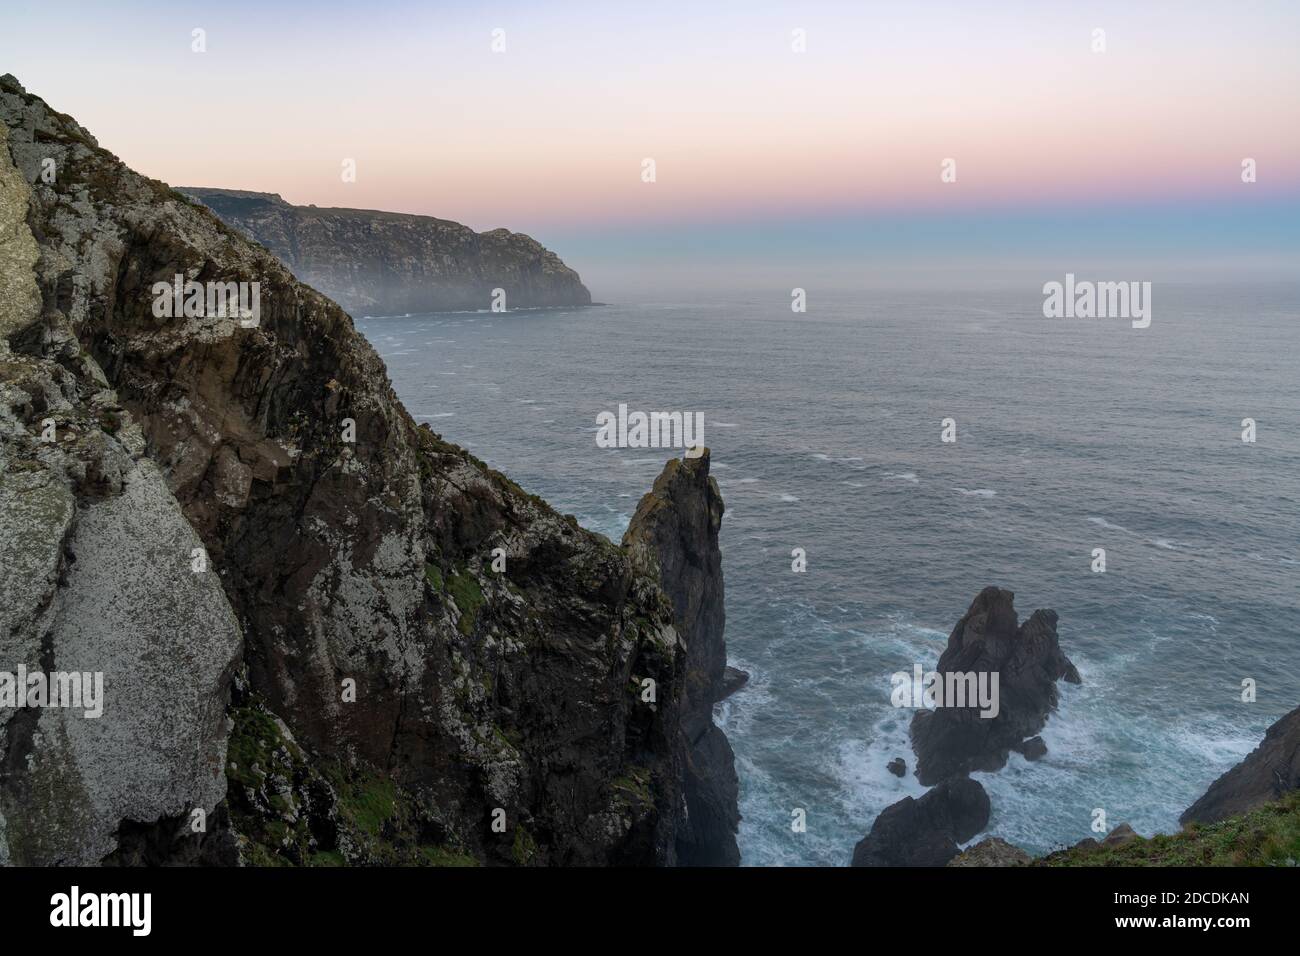 Bellissimo tramonto sulla costa rocciosa selvaggia della Galizia in Spagna settentrionale Foto Stock